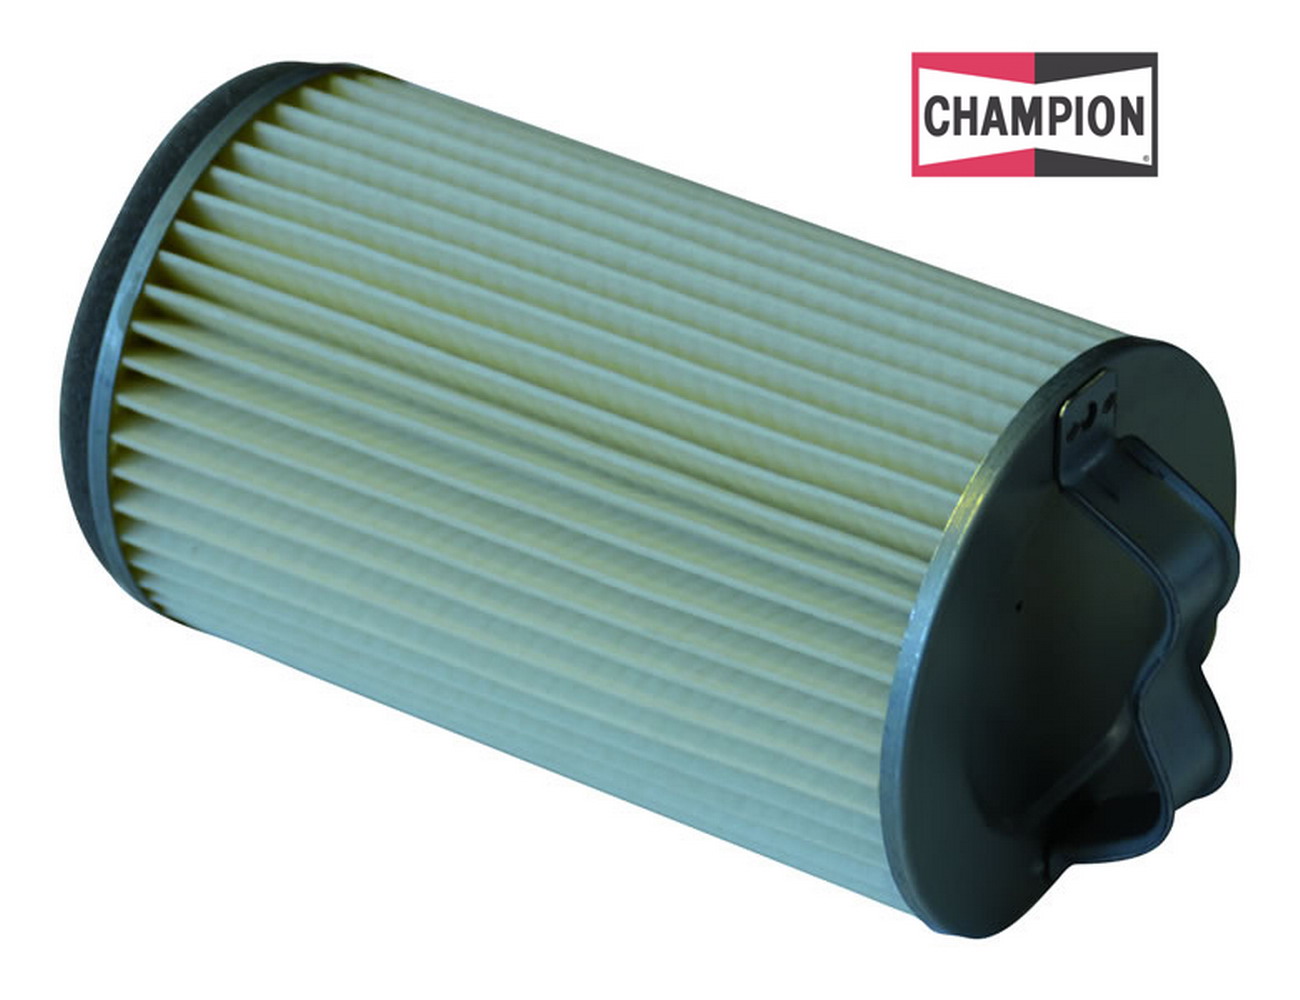 Obrázek produktu Vzduchový filtr CHAMPION V307/301 100604635